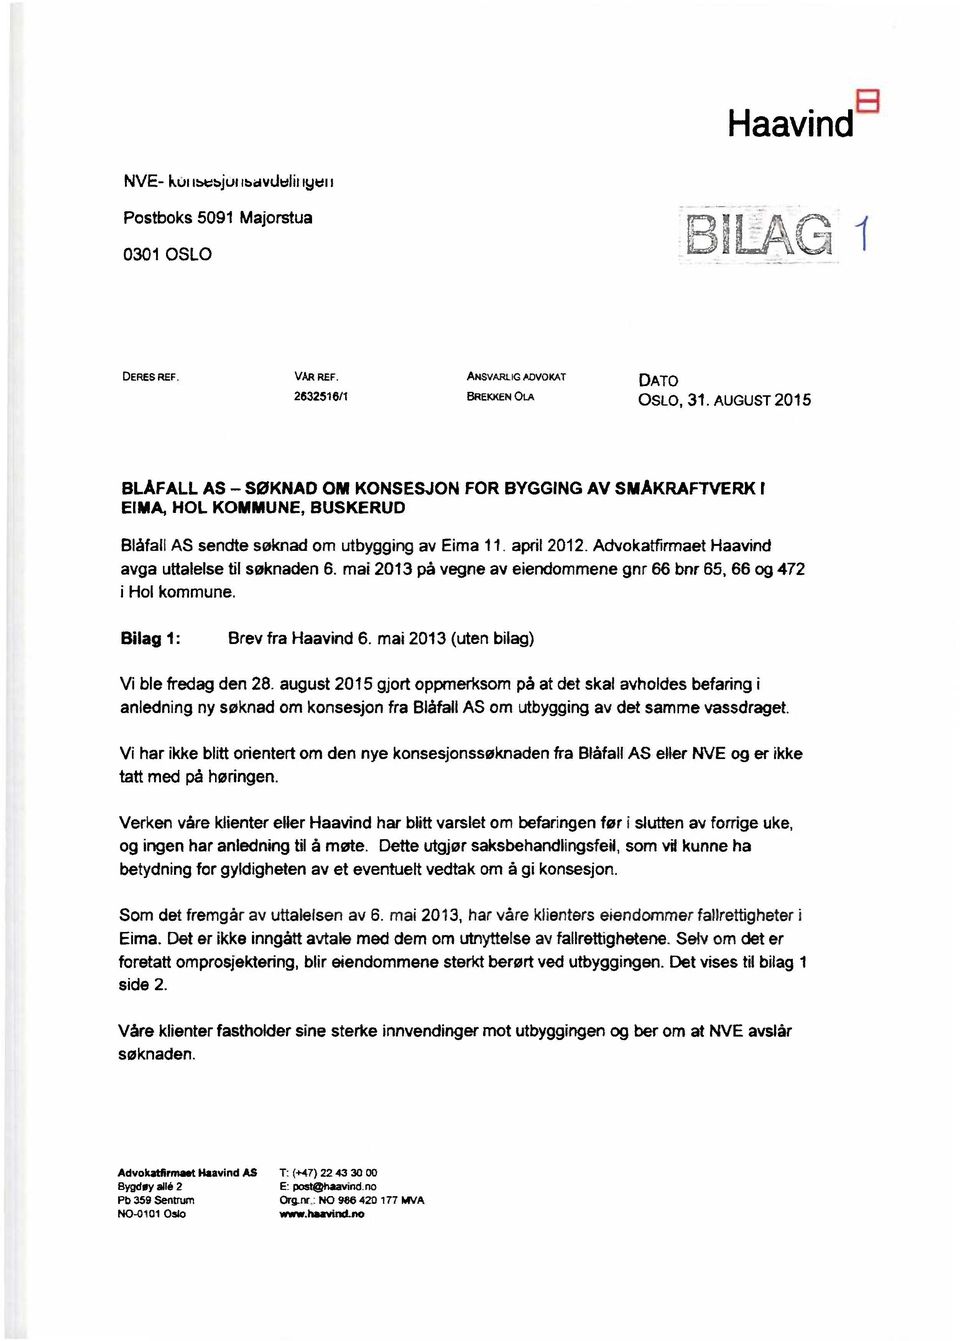 Advokatfirrnaet Haavind avga uttalelse til søknaden 6. mai 2013 pà vegne av eiendommene gnr 66 bnr 65, 66 og 472 i Hol kommune. Bilag 1: Brev fra Haavind 6. mai 2013 (uten bilag) Vi ble fredag den 28.